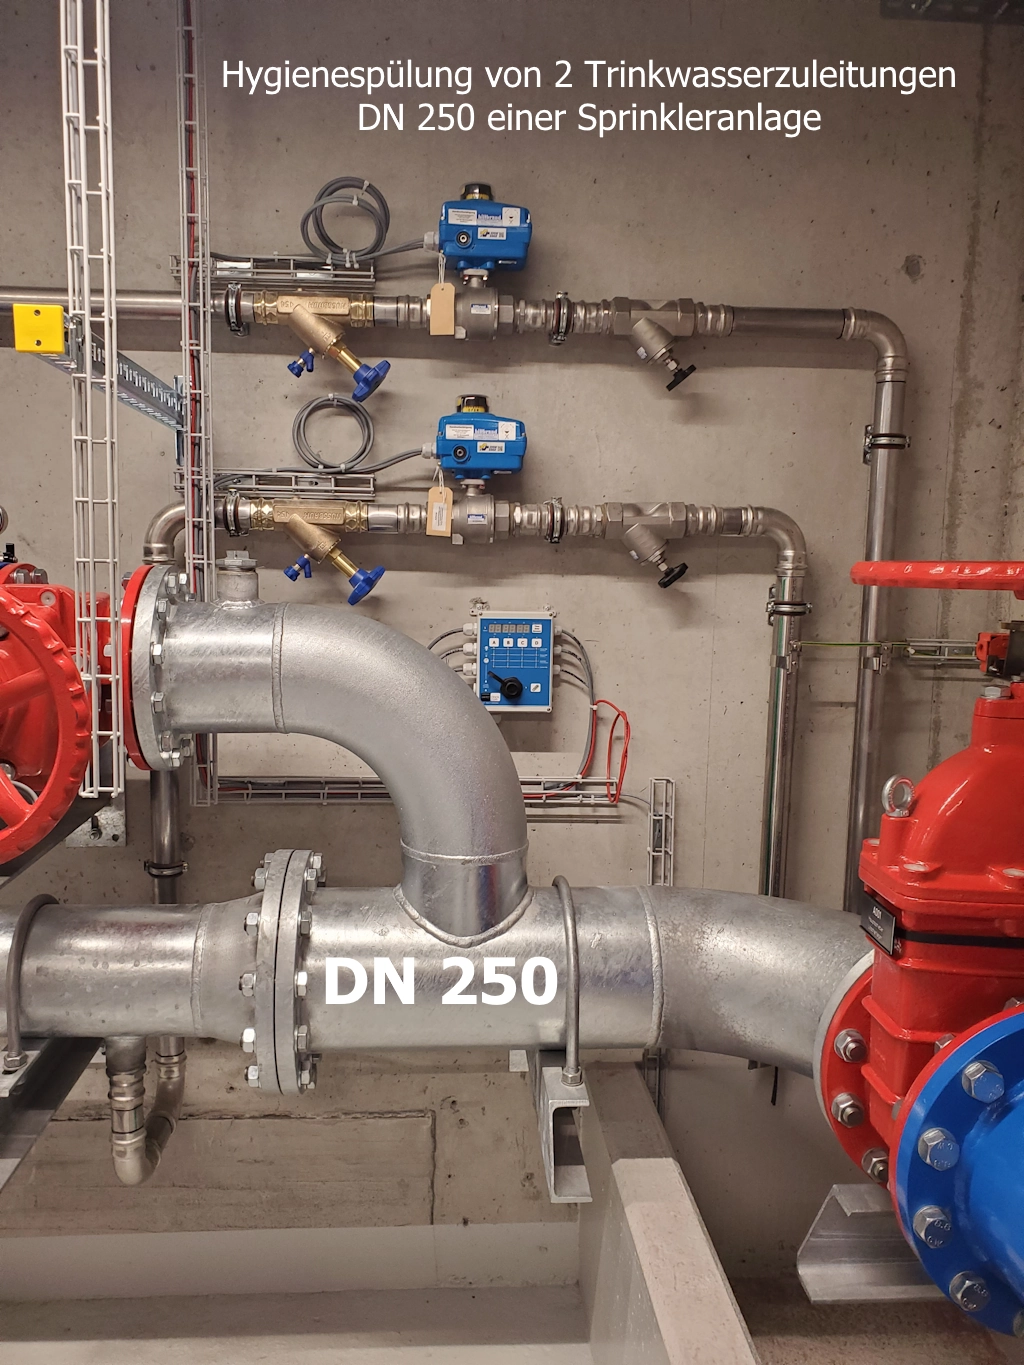 Hygienespülung von 2 Trinkwasserzuleitungen DN 250 mit Switchclock